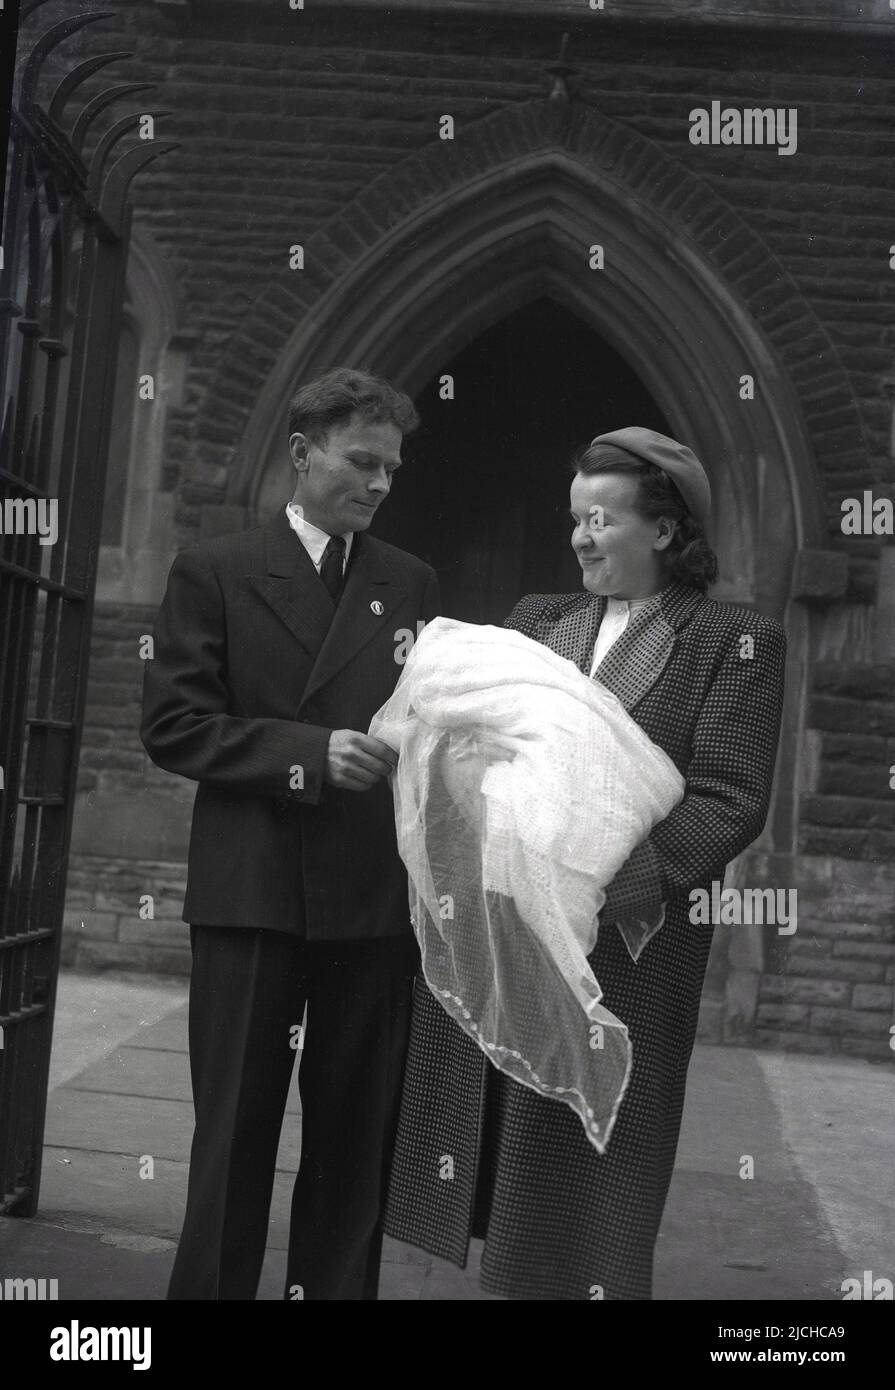 1940s, historische, stolze Eltern, die mit ihrem gerade getauften Baby vor der Kirche, England, Großbritannien, stehen. Stockfoto